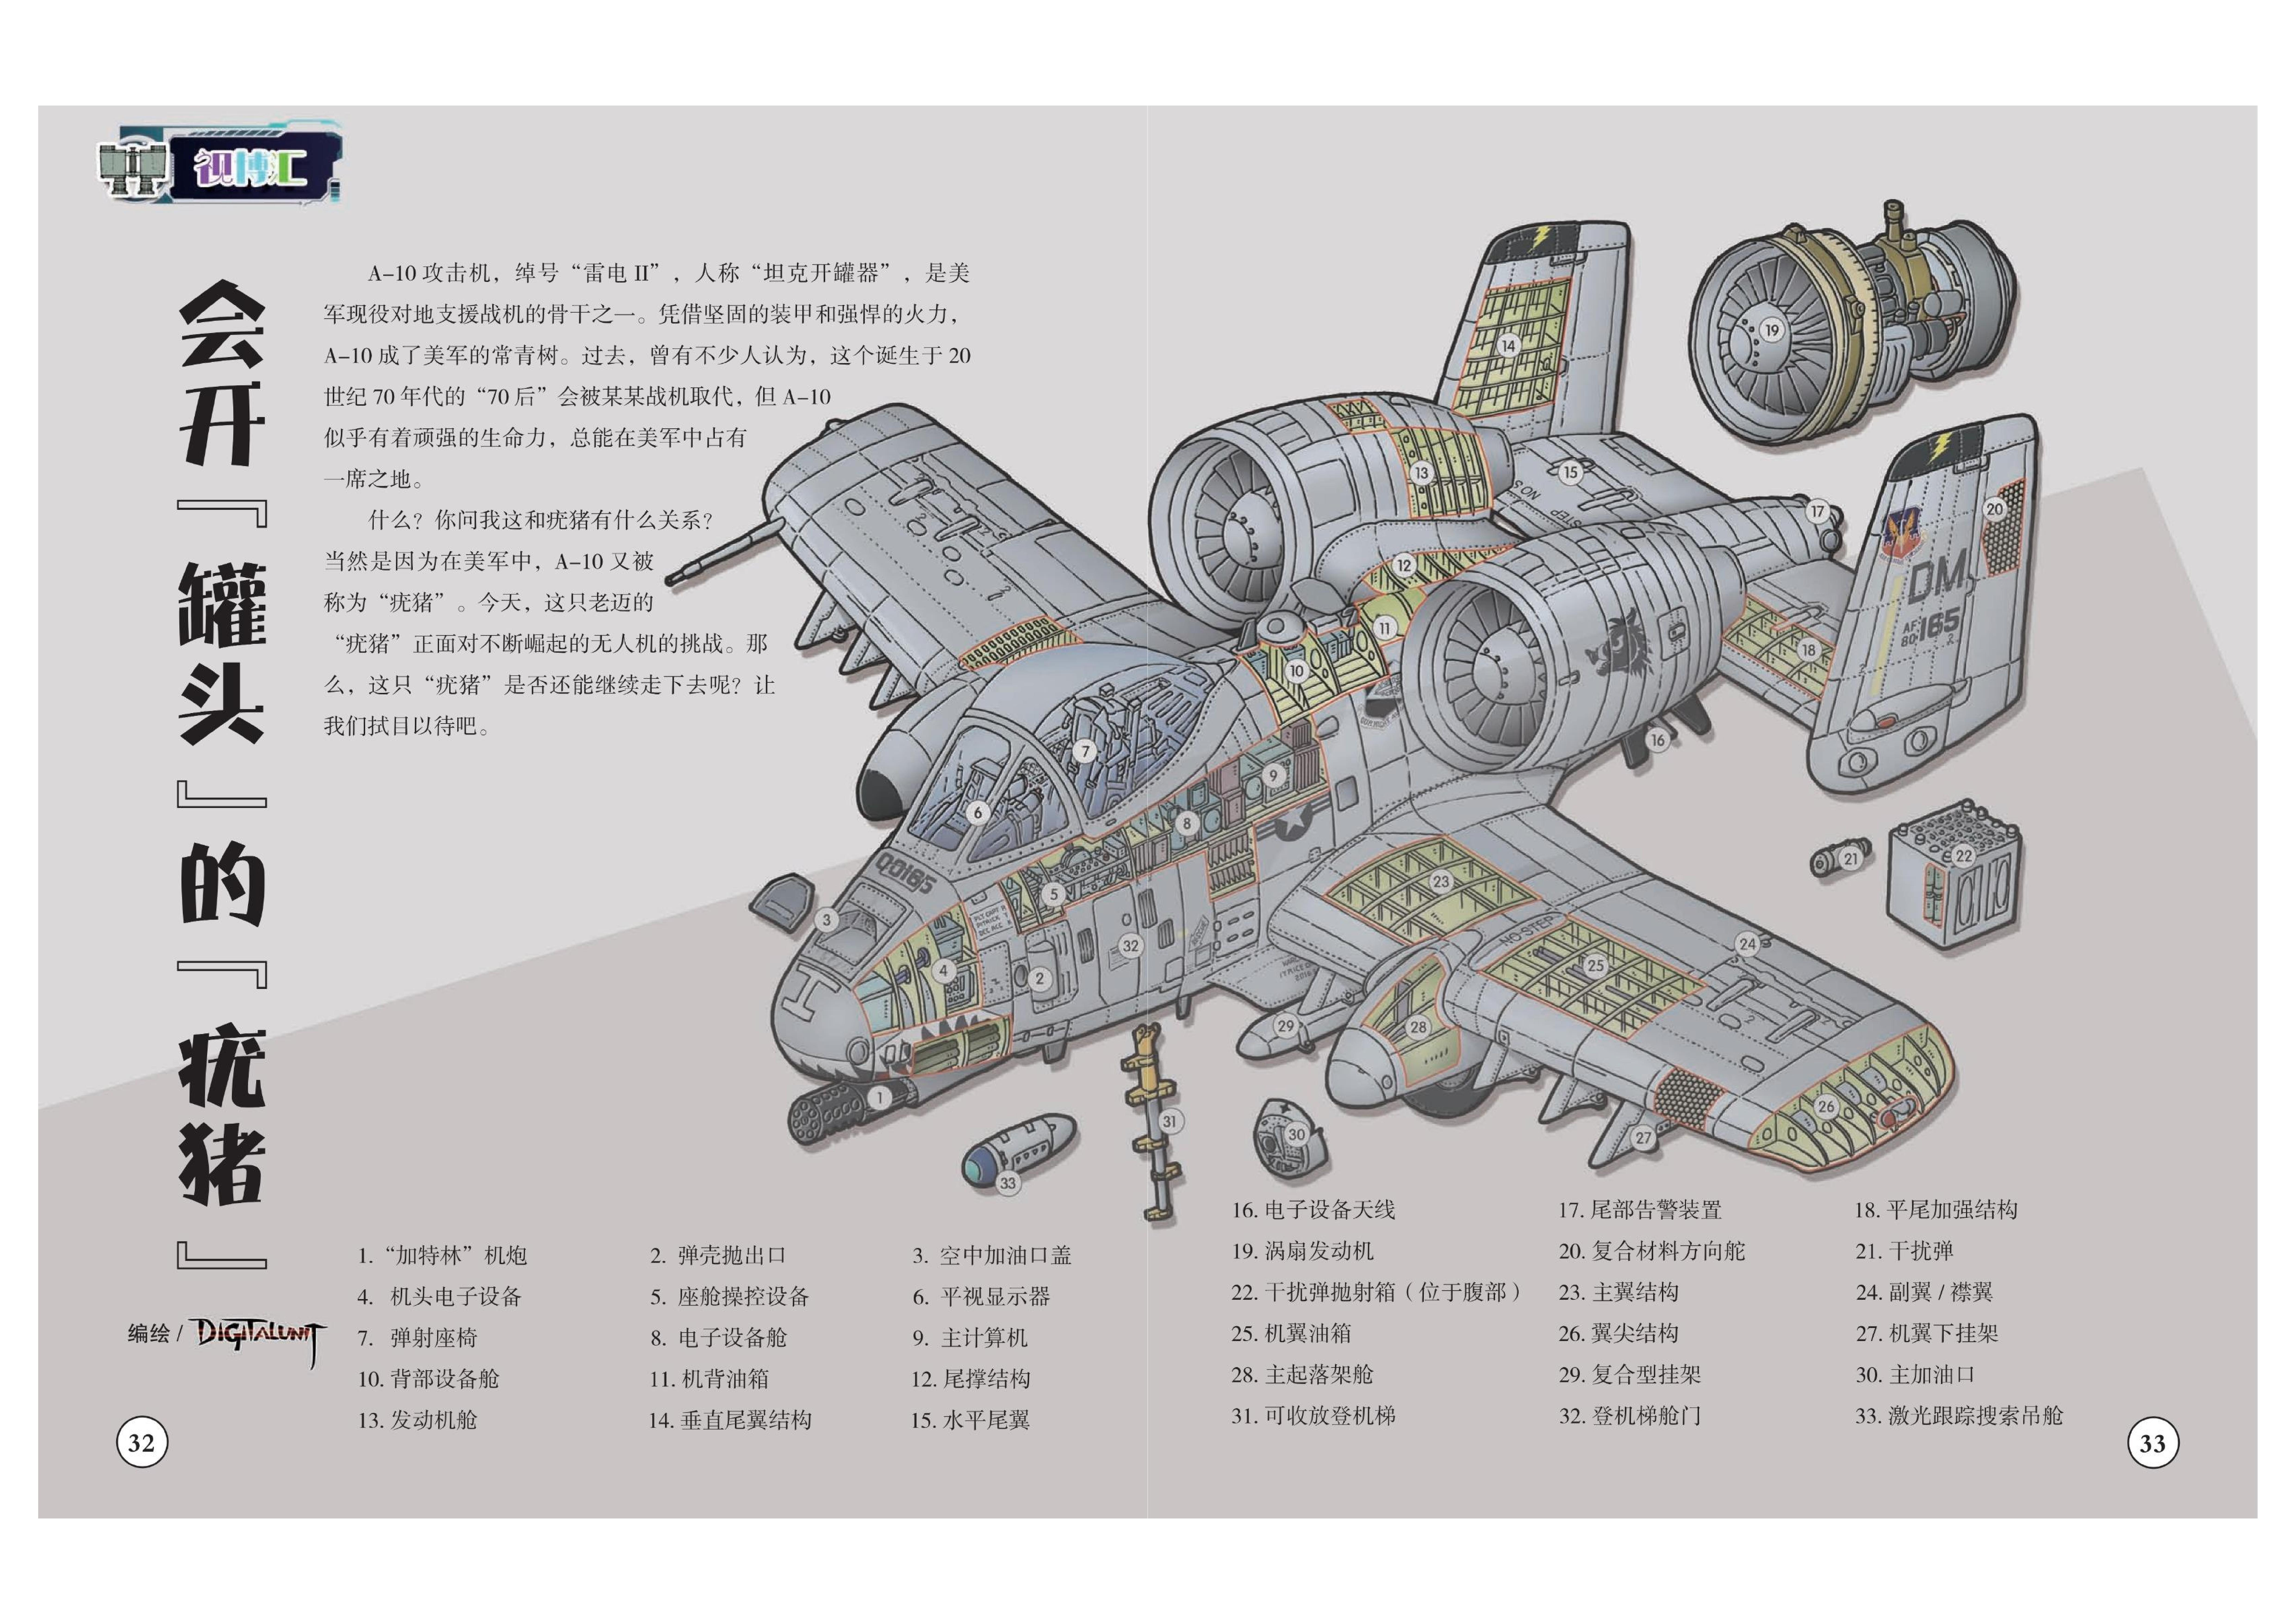 A-10具有坚固的装甲和强悍的火力,战机的组成结构